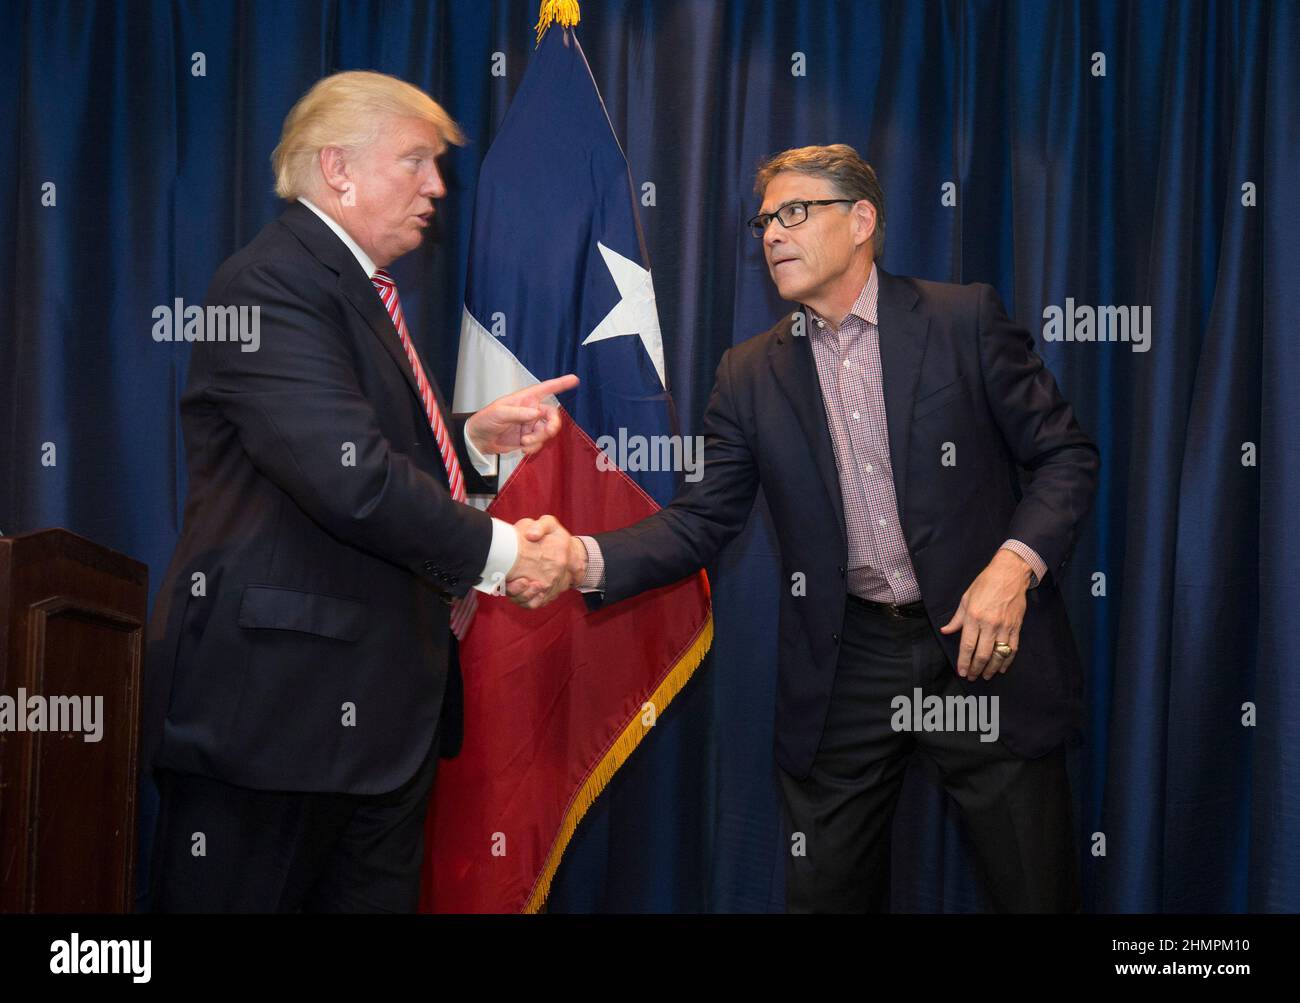 Austin, Texas le 23 août 2016 : le candidat républicain à la présidence DONALD TRUMP serre la main avec l'ancien gouverneur RICK PERRY alors qu'il apporte sa campagne non conventionnelle au Texas avec une oscillation à travers le centre du Texas, principalement démocrate, avec des collectes de fonds et un rassemblement. Banque D'Images